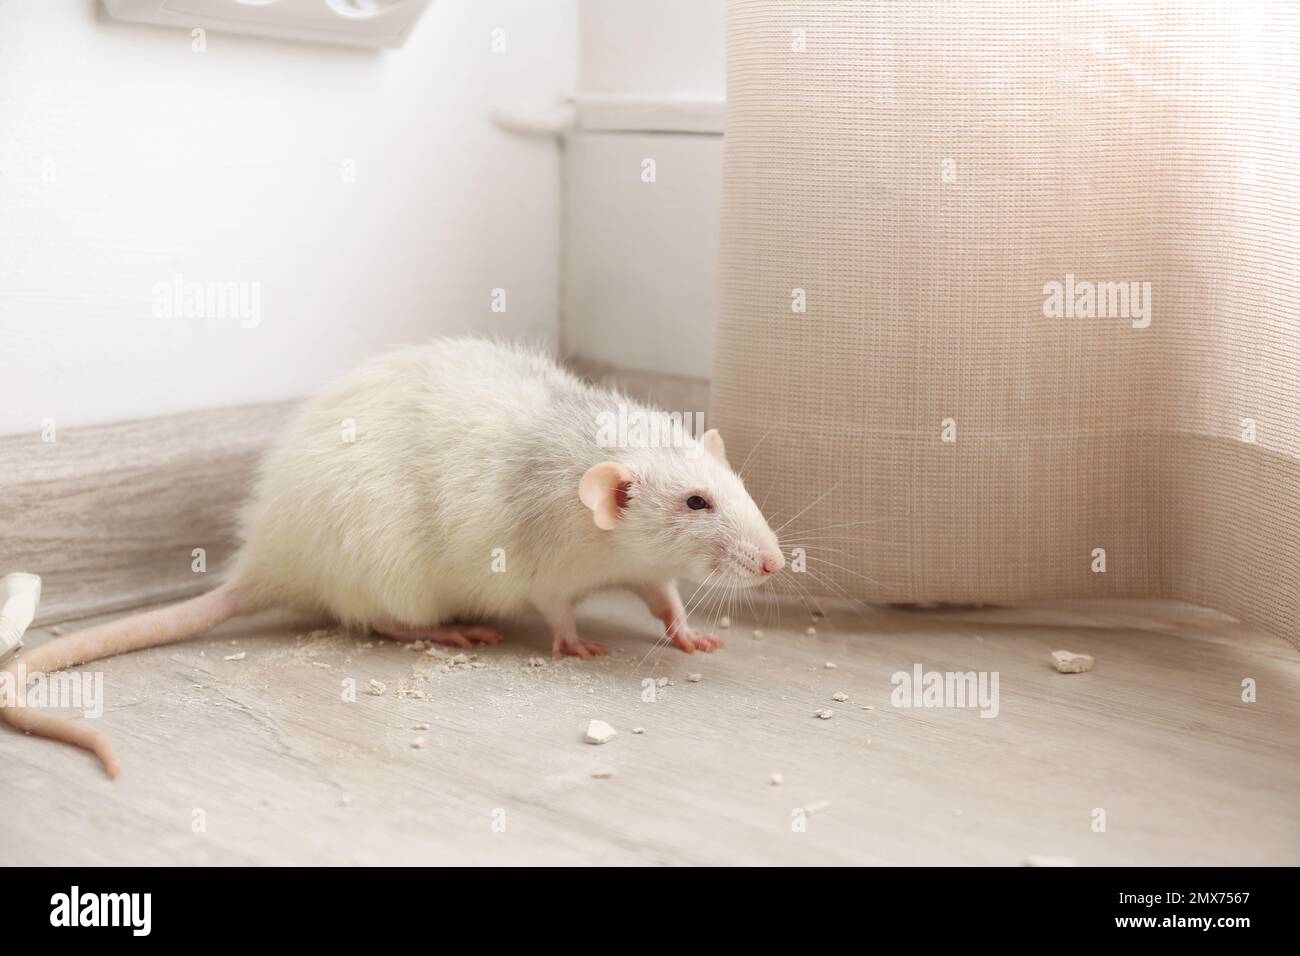 White rat on floor indoors. Pest control Stock Photo